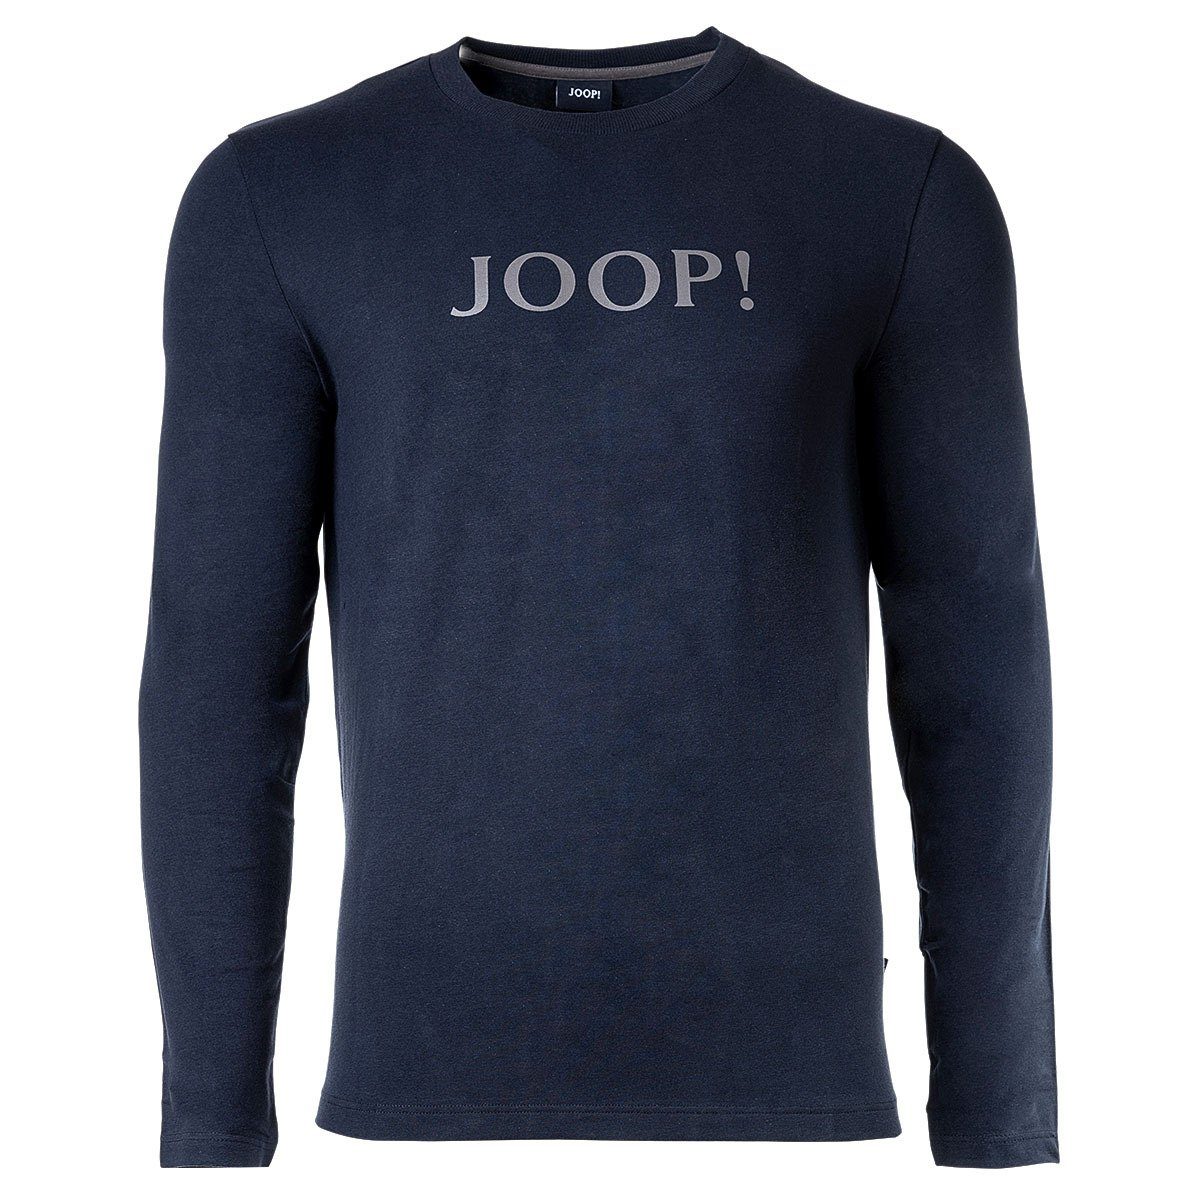 JOOP! T-Shirt Herren Langarm-Shirt - Loungewear, Rundhals